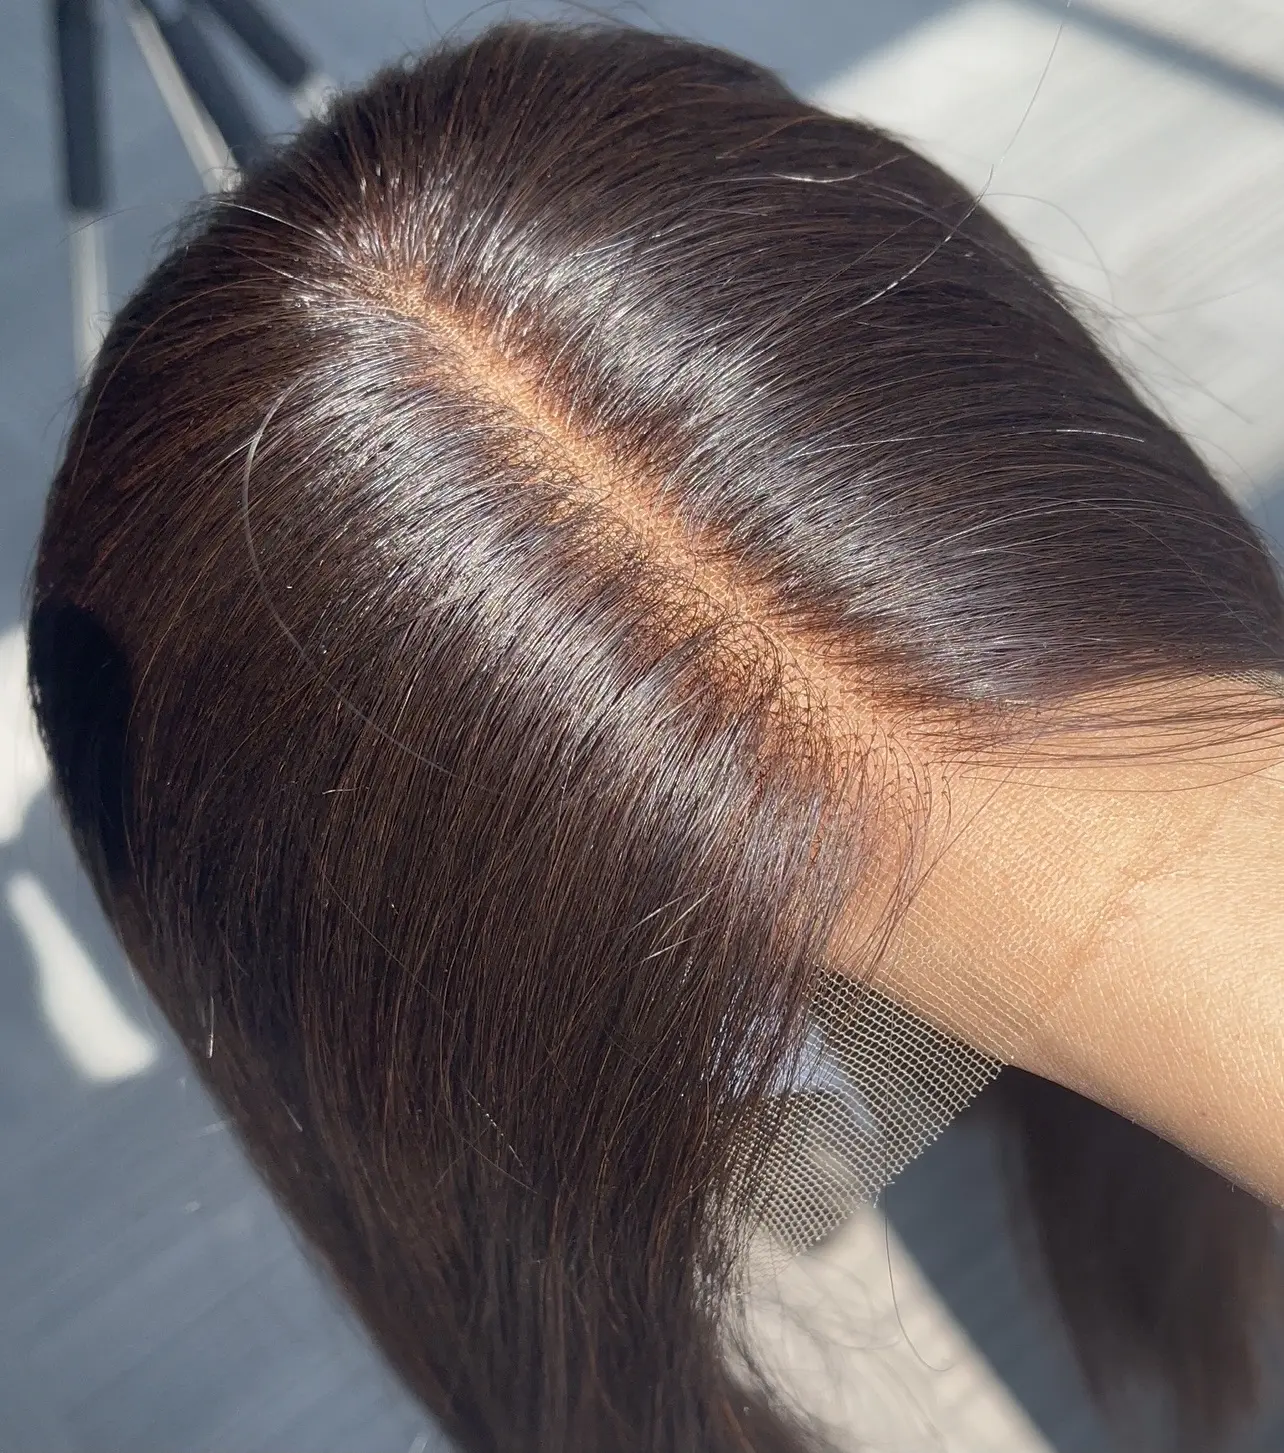 Çin üretici protez saç, remy işlenmemiş insan saçı kadın, koyu siyah gri yaşlı adam için saç parçası